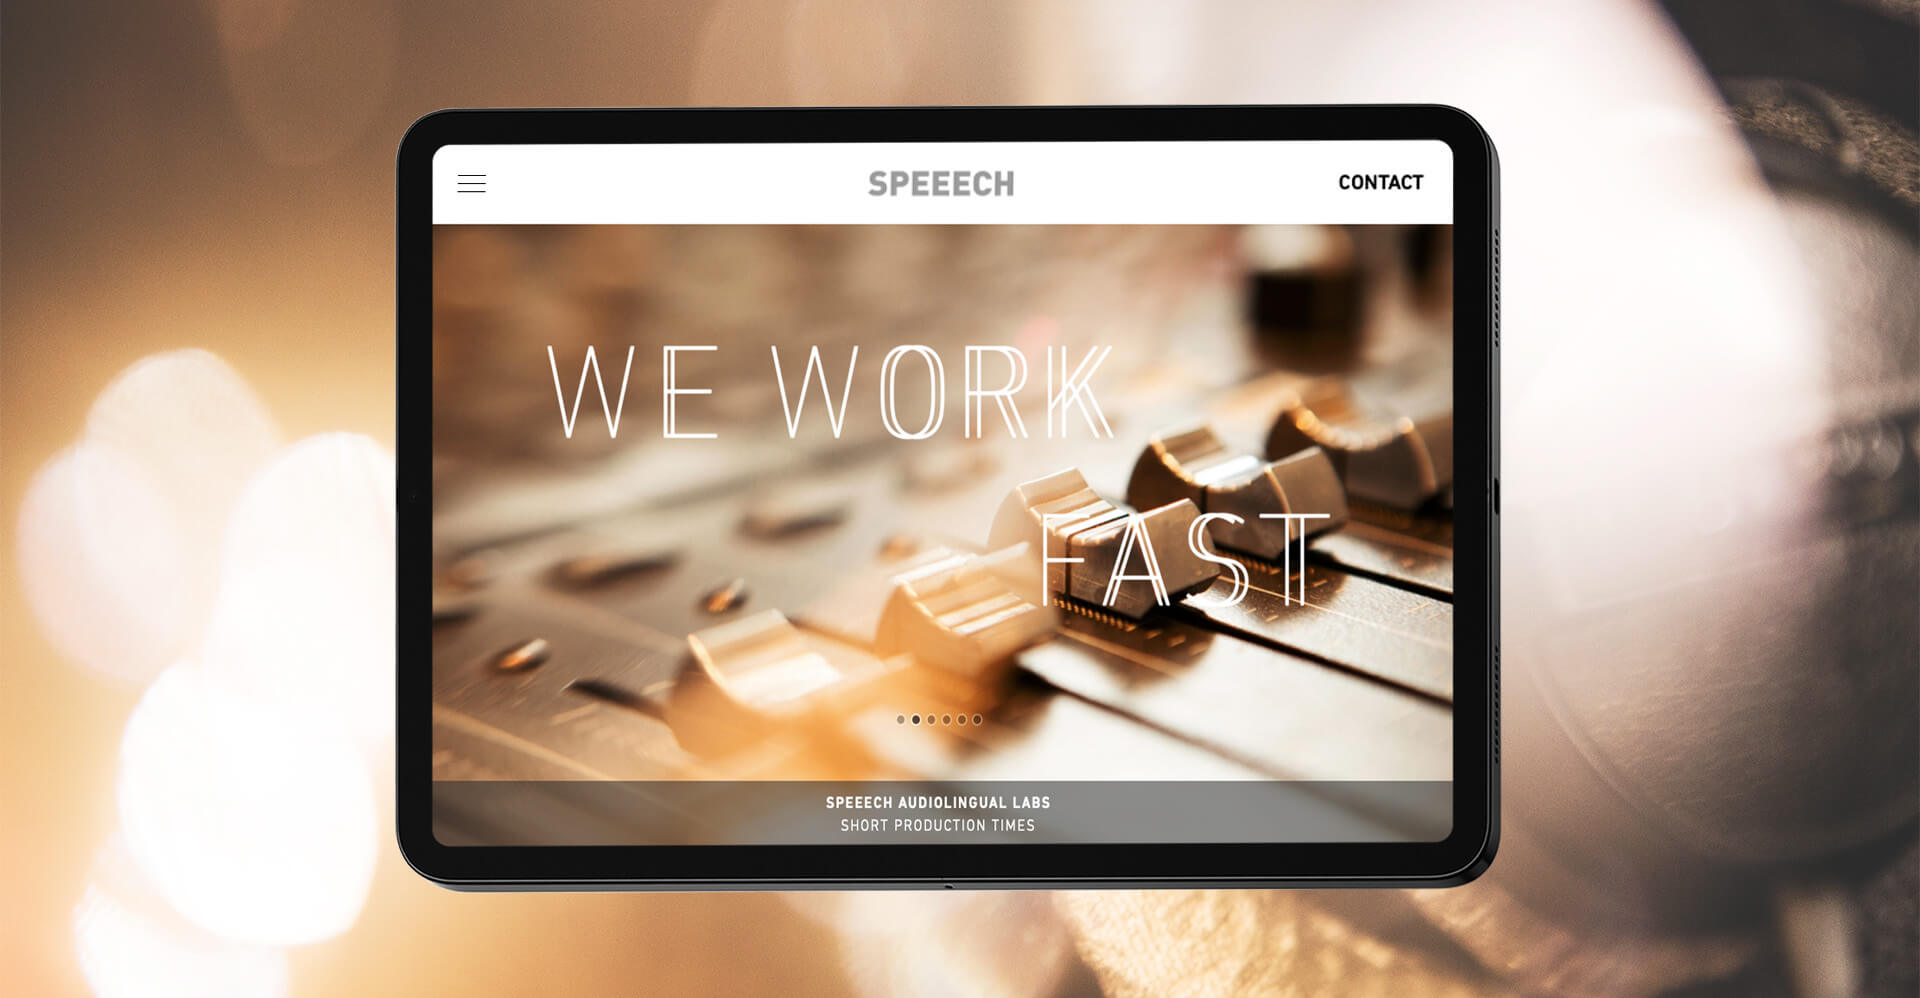 Weißes iPad mit Website von Speeech auf der steht we work fast